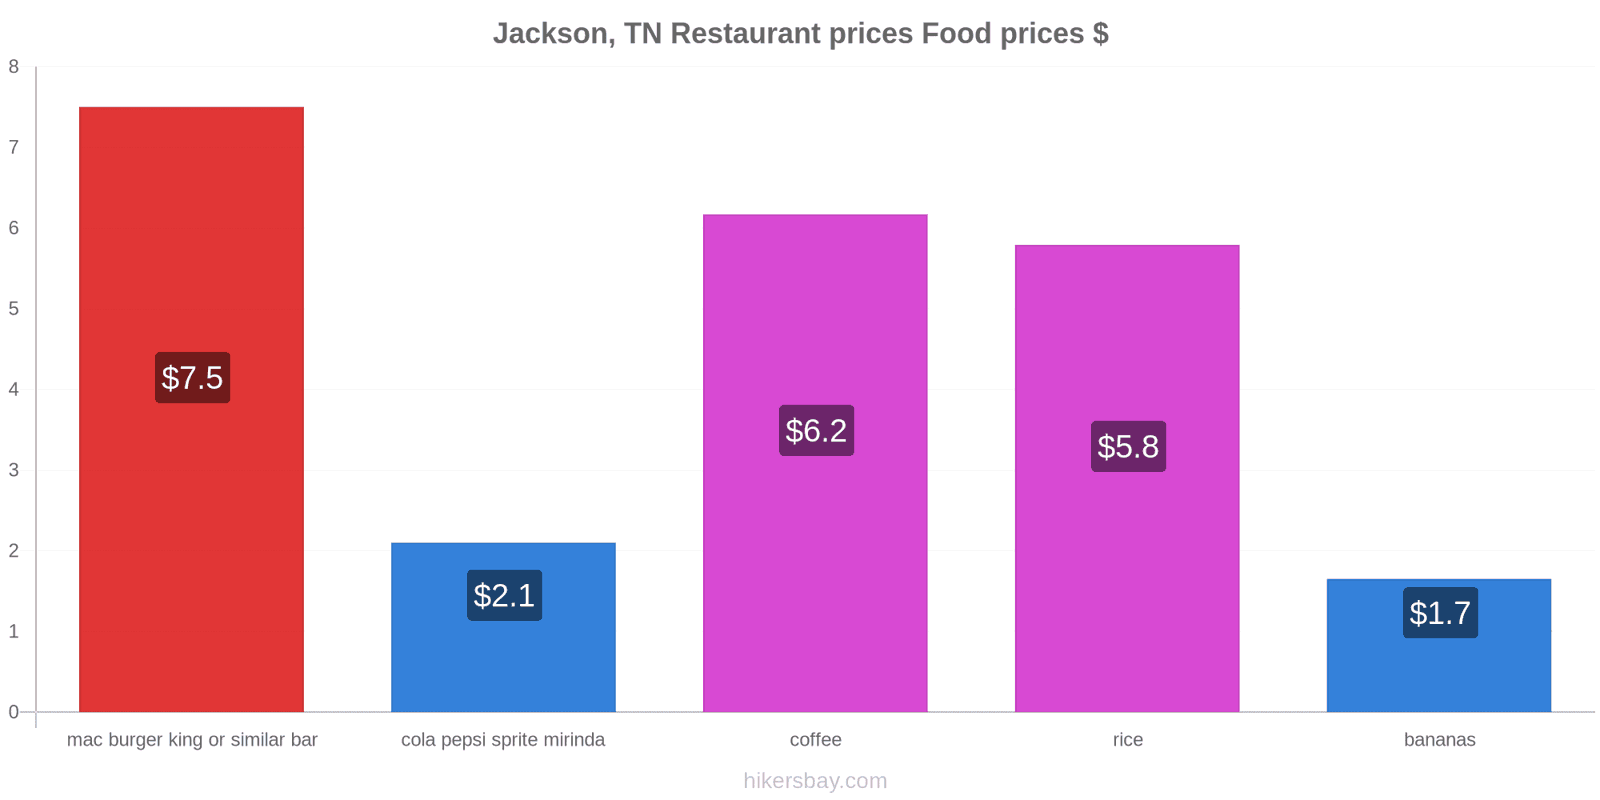 Jackson, TN price changes hikersbay.com